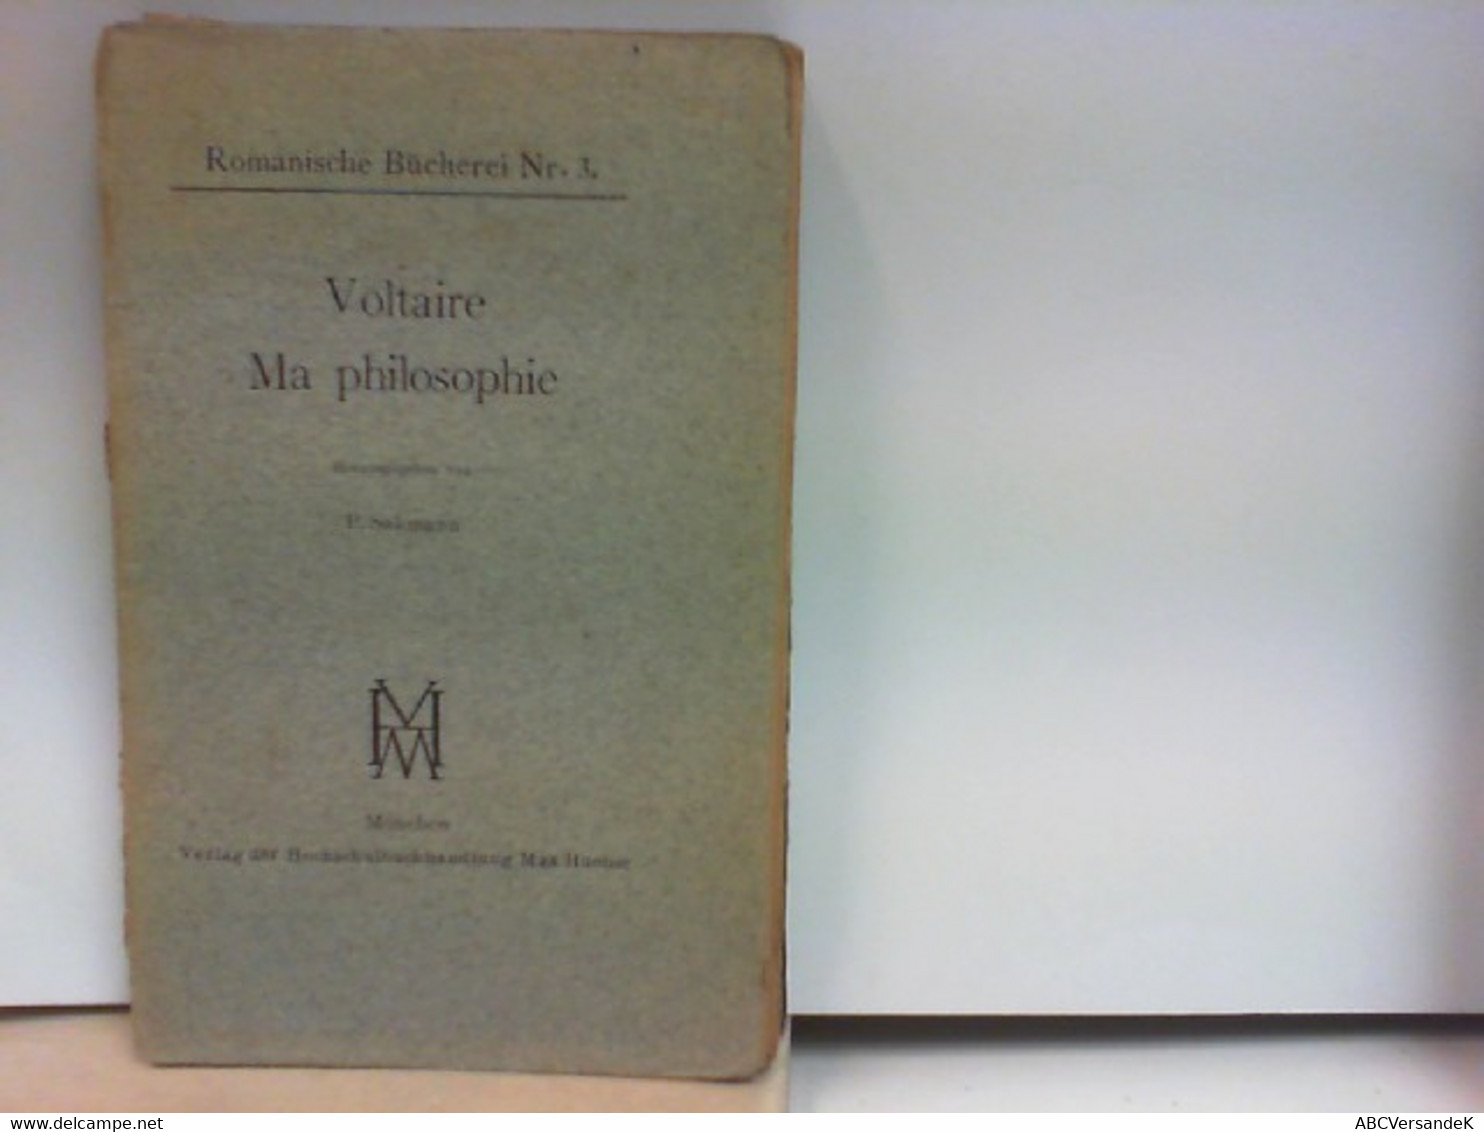 Voltaire - Ma Philosophie - Romanische Bücherei Nr. 3 - Philosophy